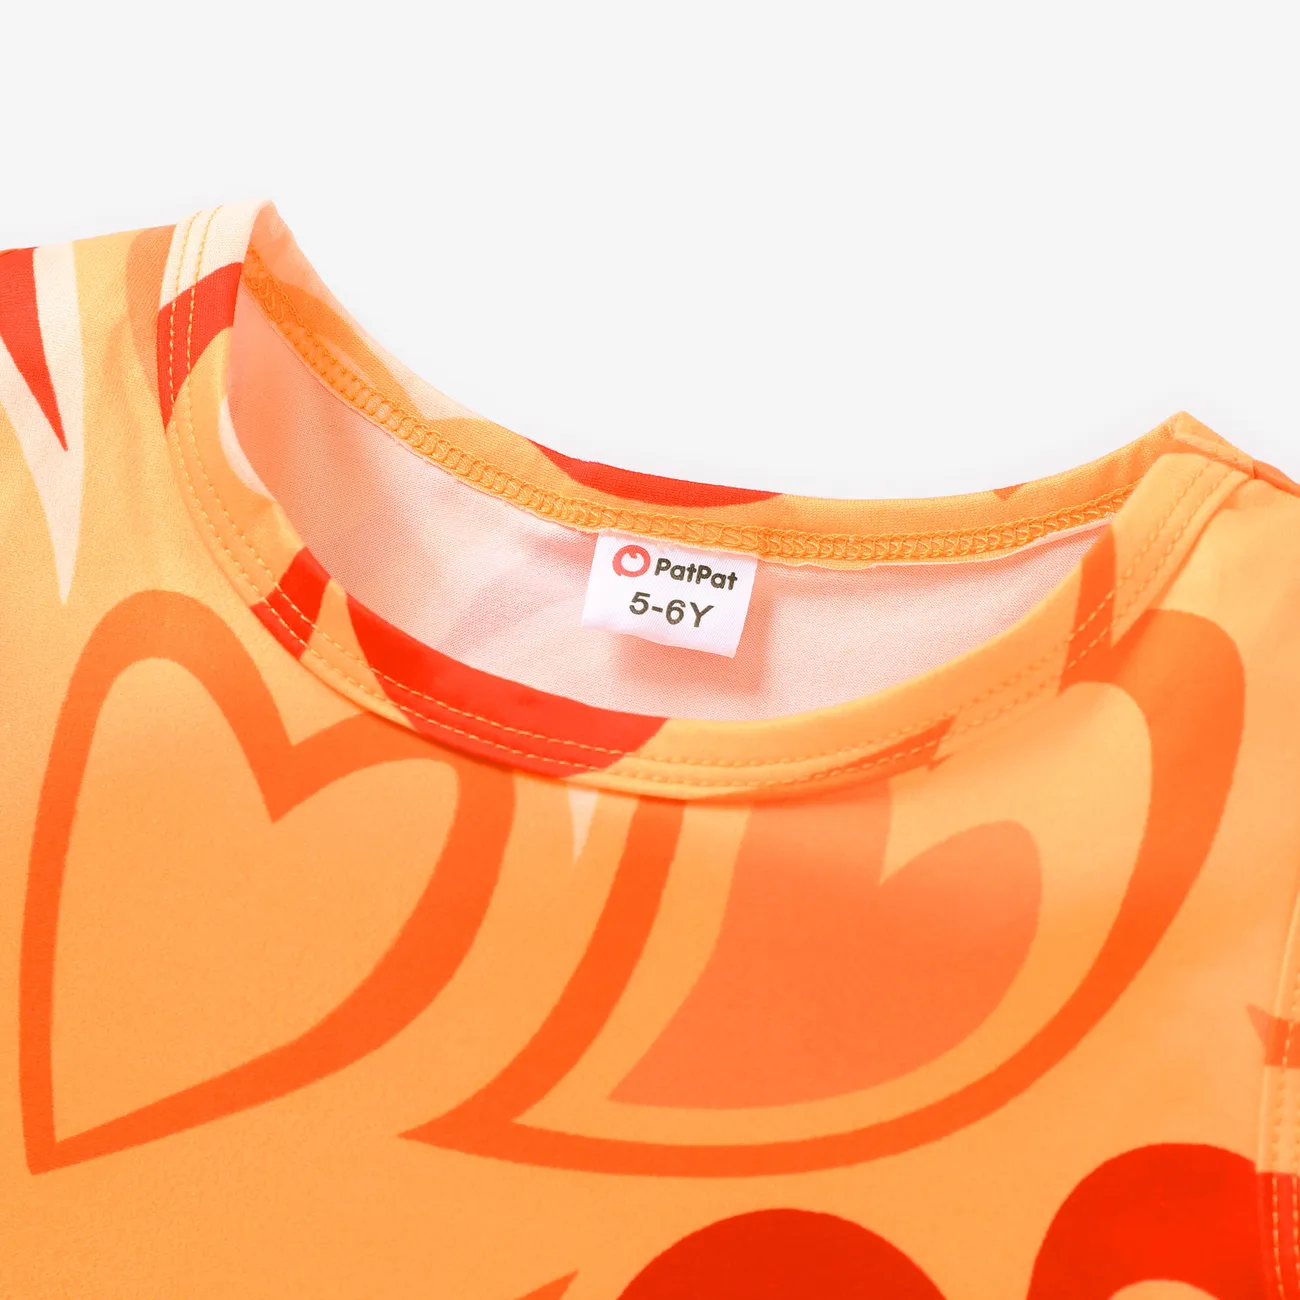 Chicos Chica En forma de corazón Sin mangas Camiseta Naranja big image 1